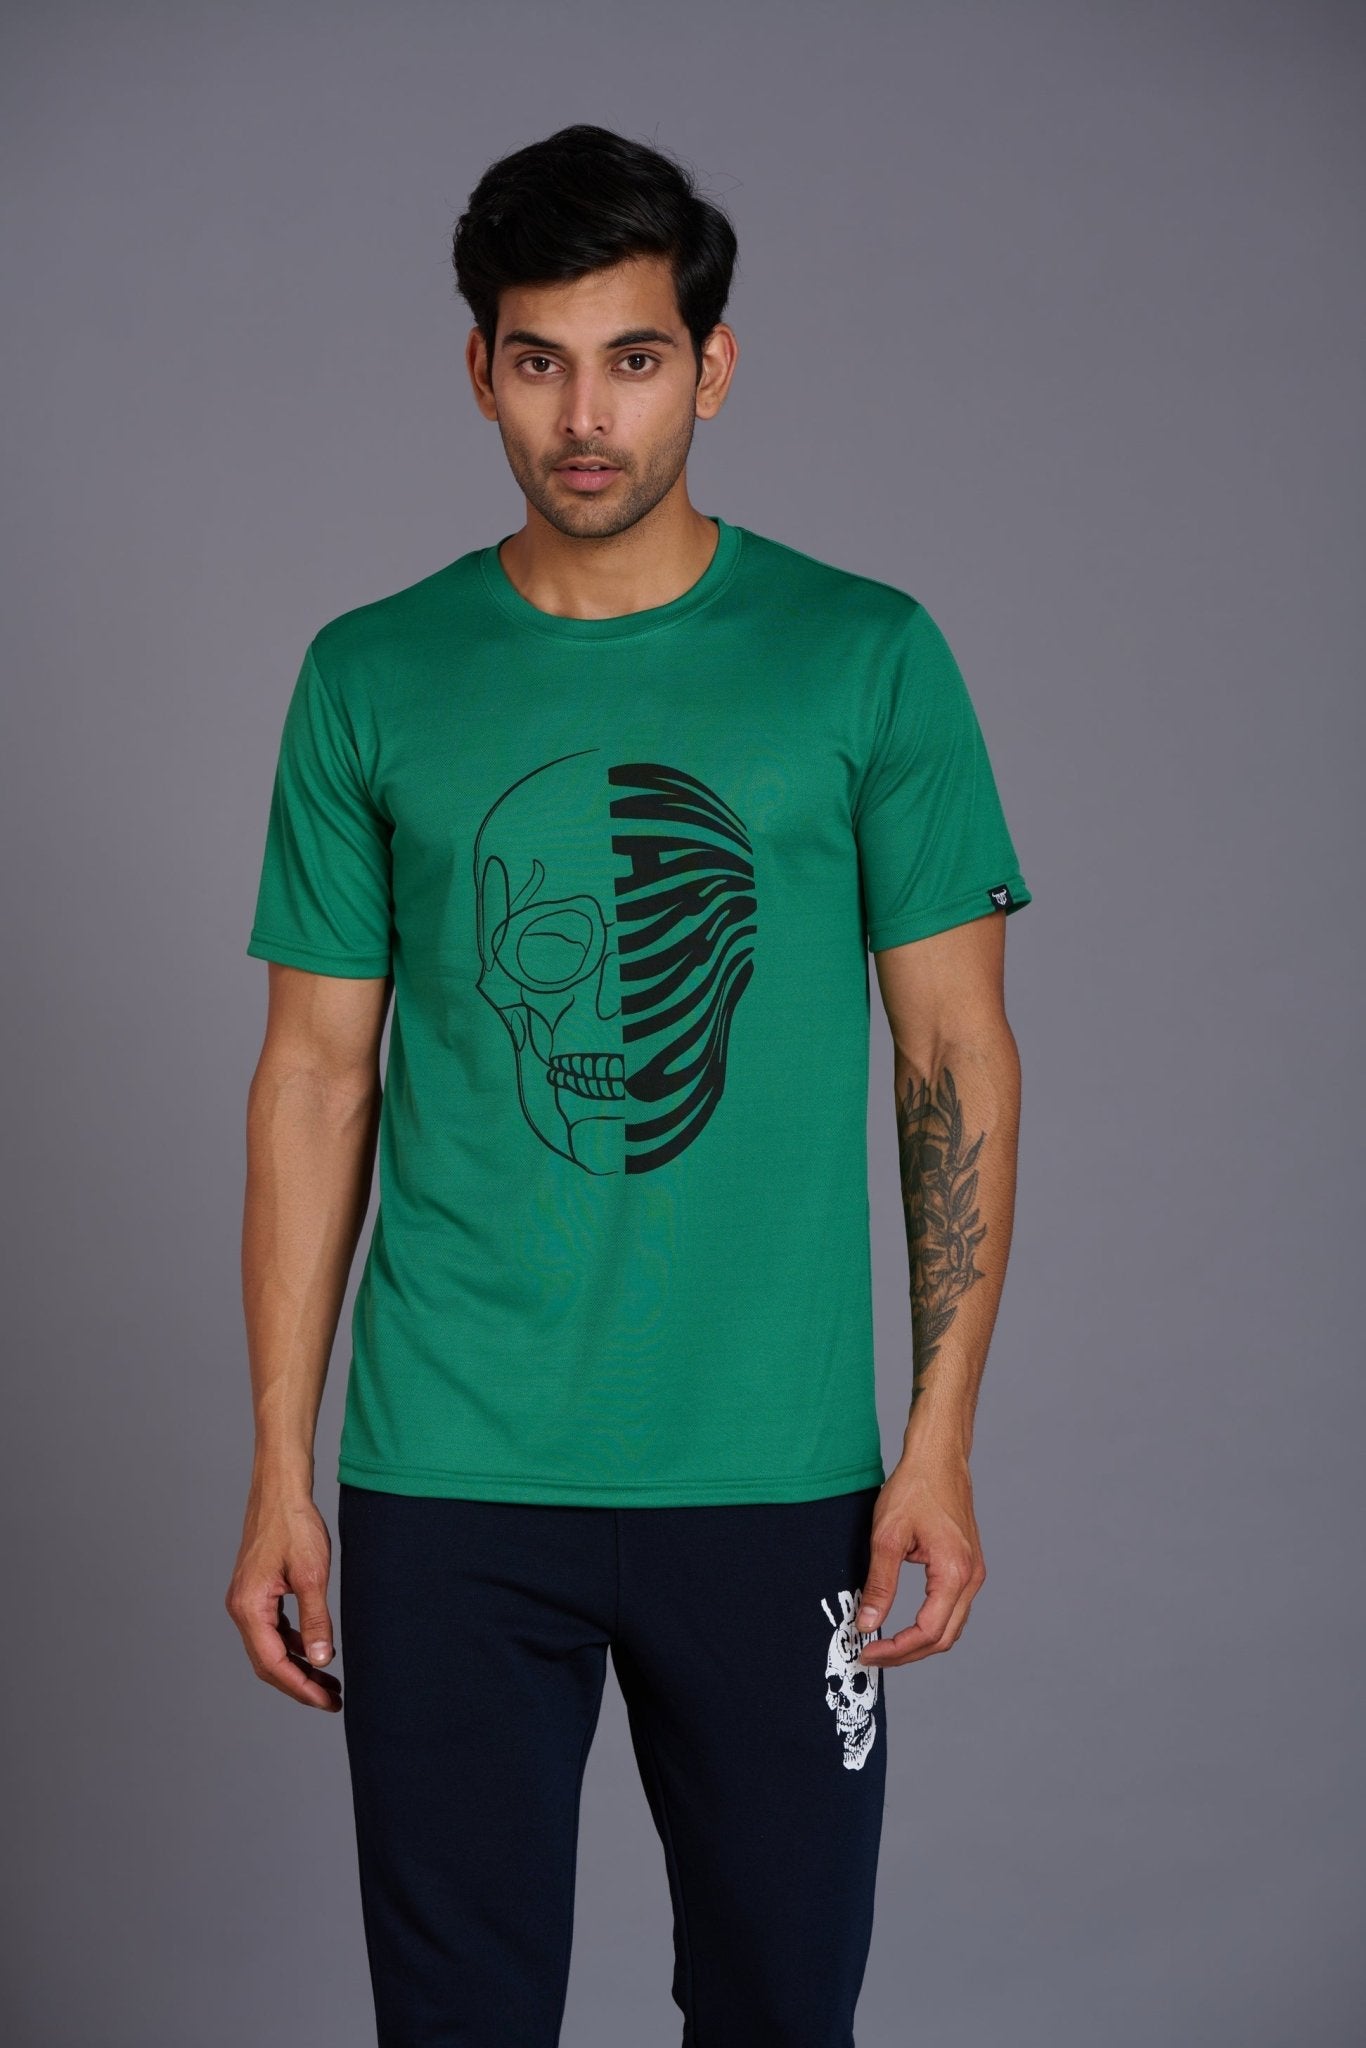 Warrior Green T-Shirt for Men - Go Devil